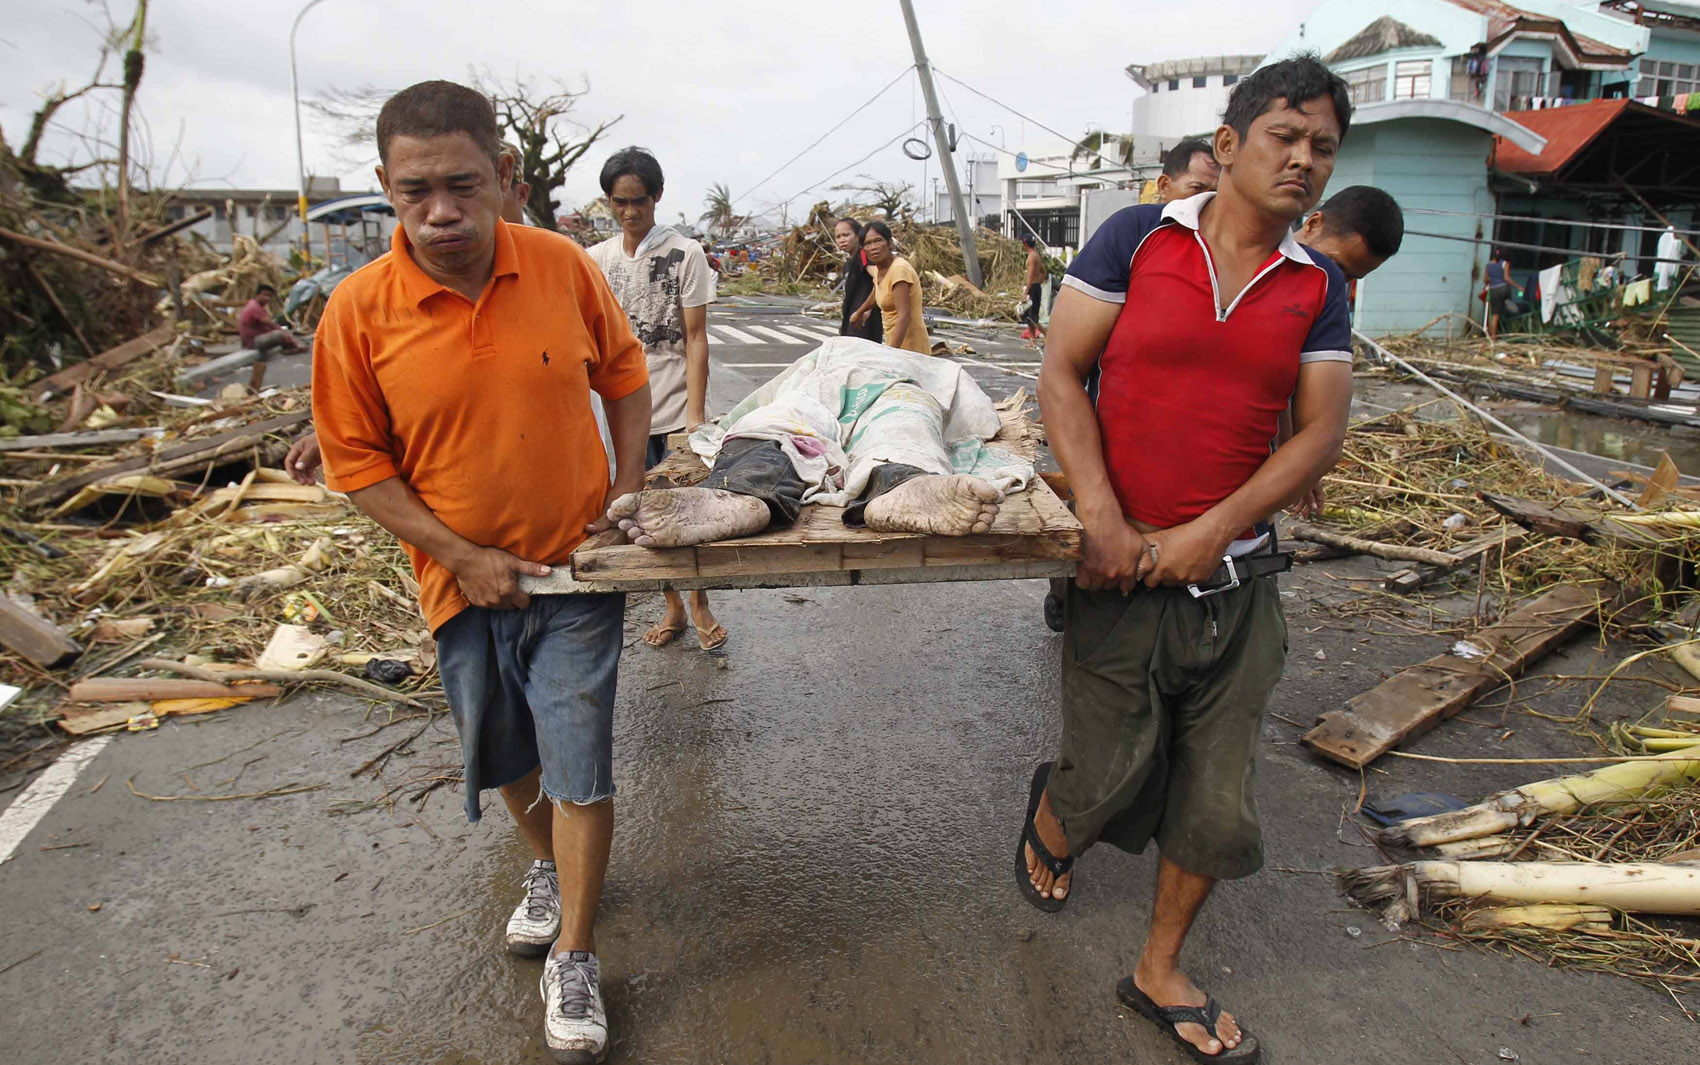 9/11 -Sobreviventes carregam o corpo de uma pessoa morta durante a passagem do tufão Haiyan na cidade Tacloban